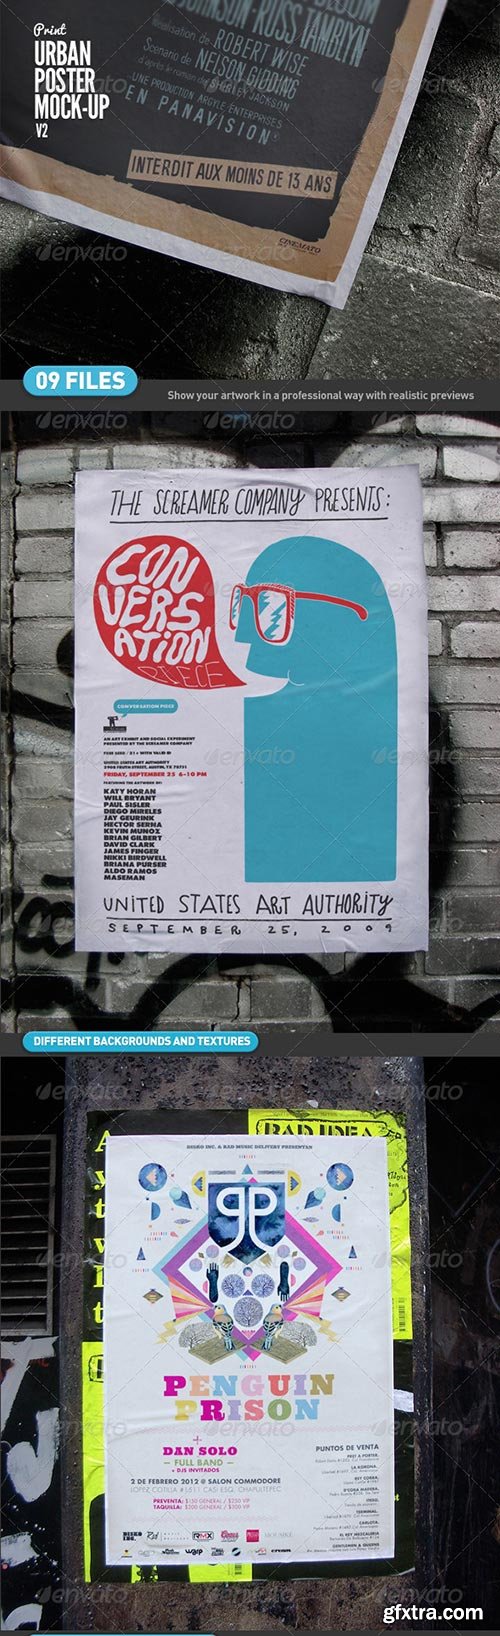 Graphicriver - Urban Poster Mock-Up v2